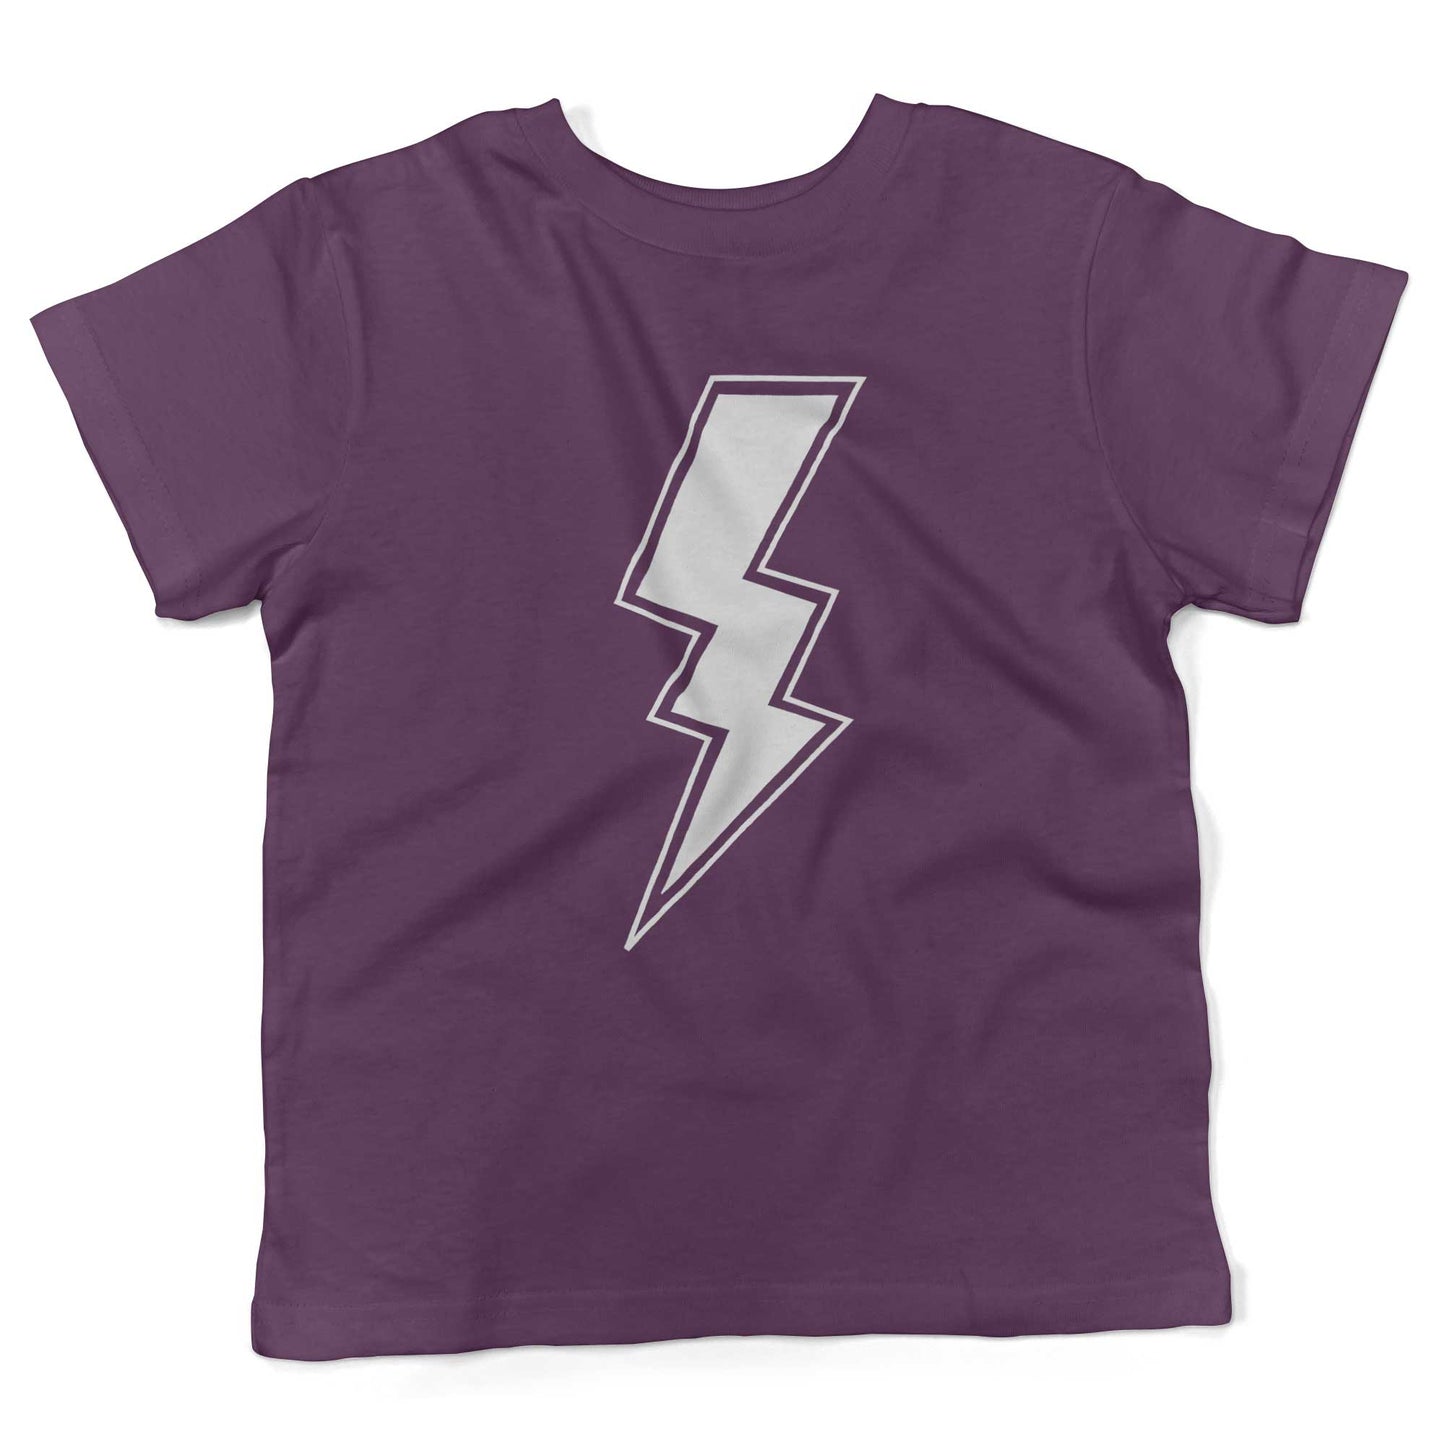 Giant Lightning Bolt Toddler Shirt-Organic Purple-2T